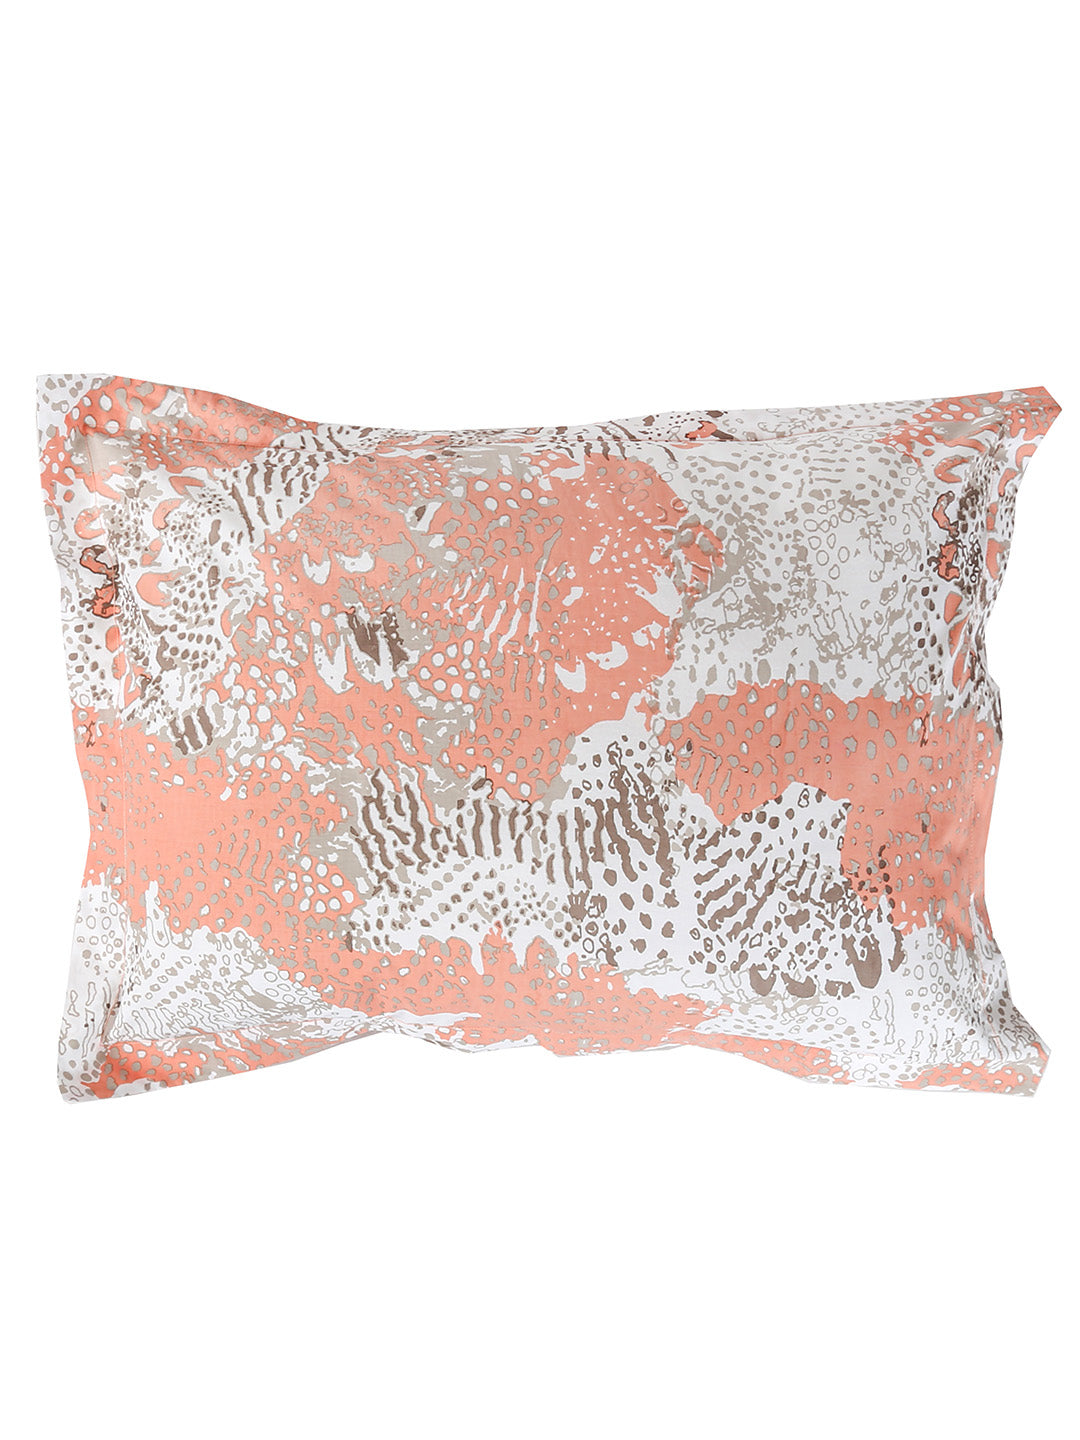 Mashak Pillow Cover (Pink)